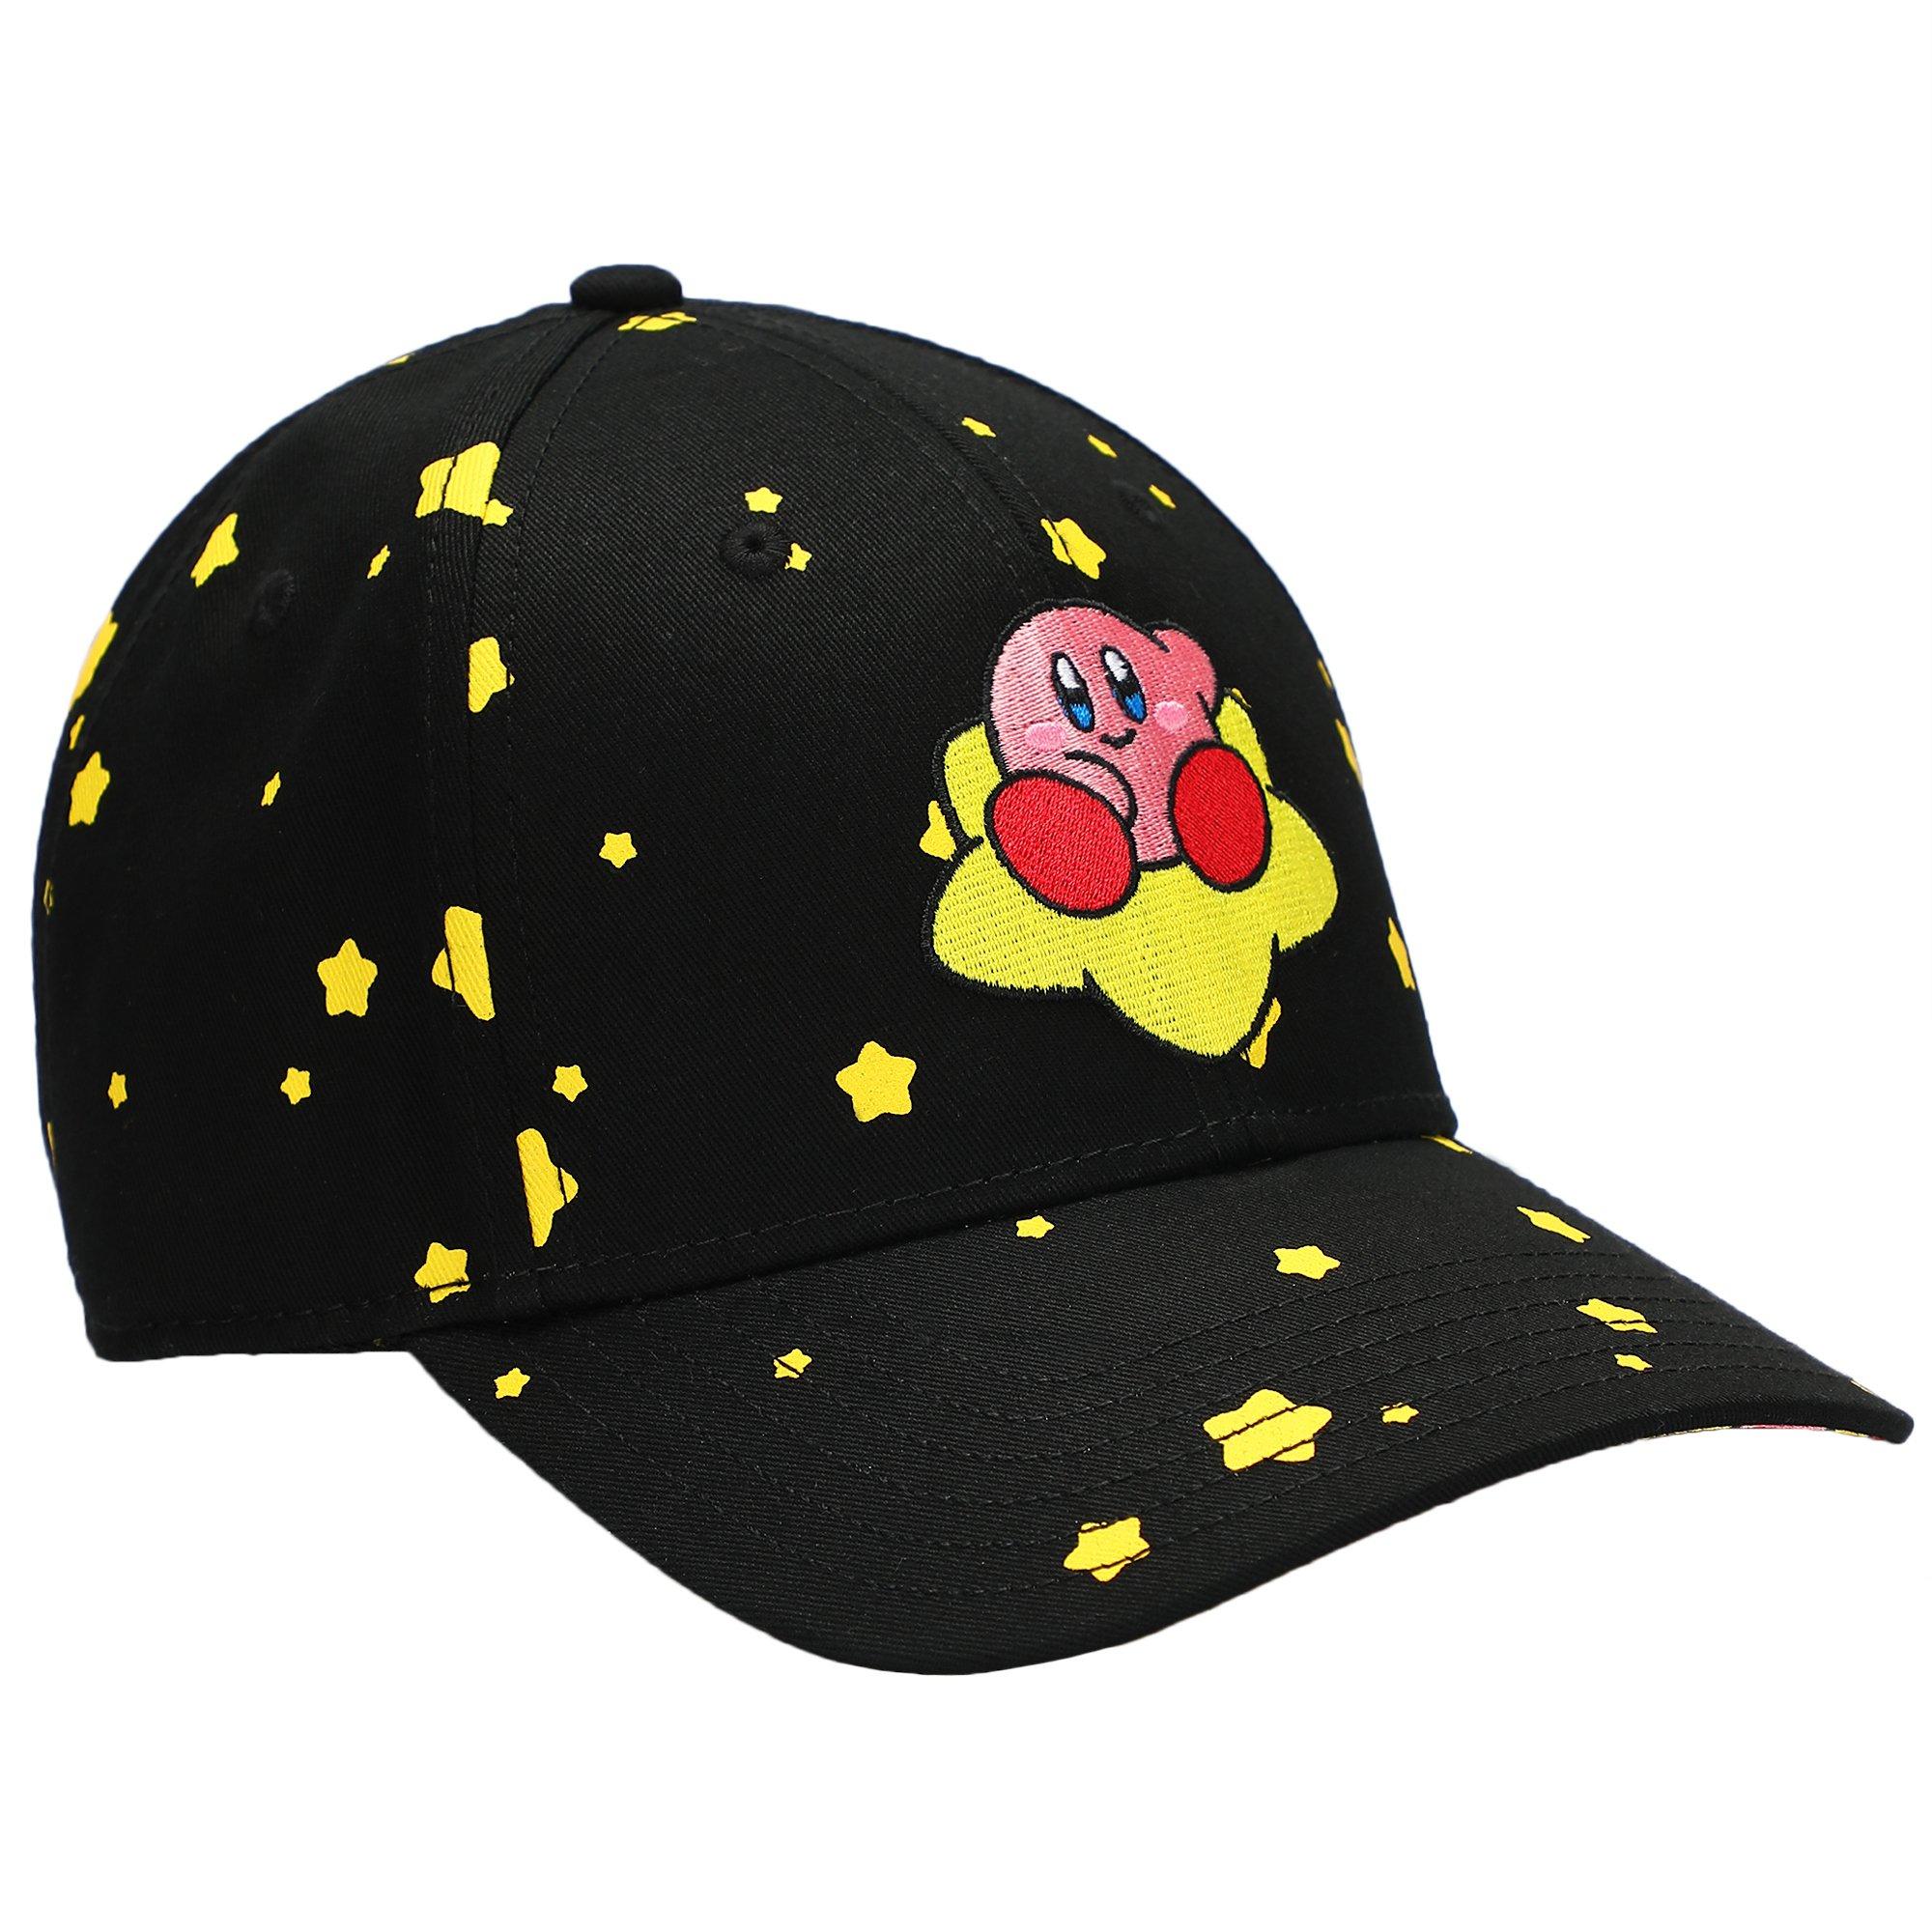 Kirby Warp Star Embroidered Hat